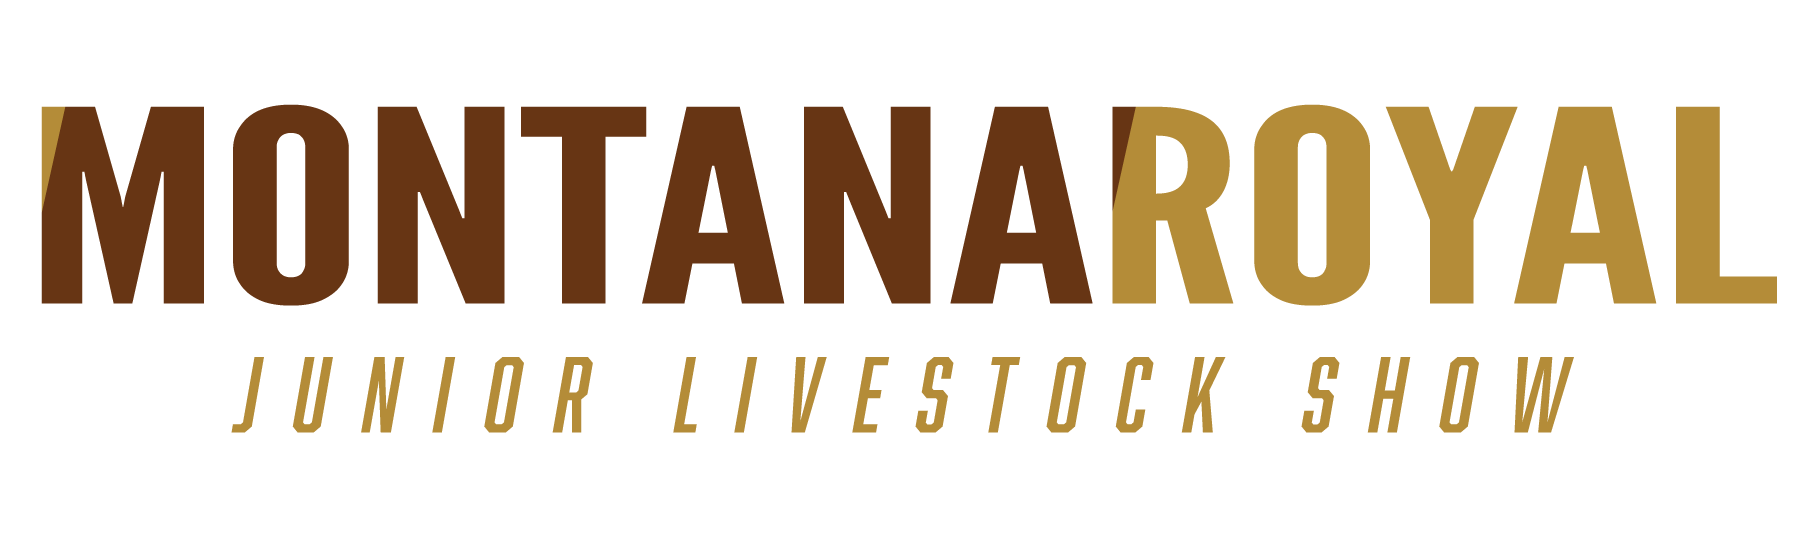 Montana Royal Junior Livestock Show